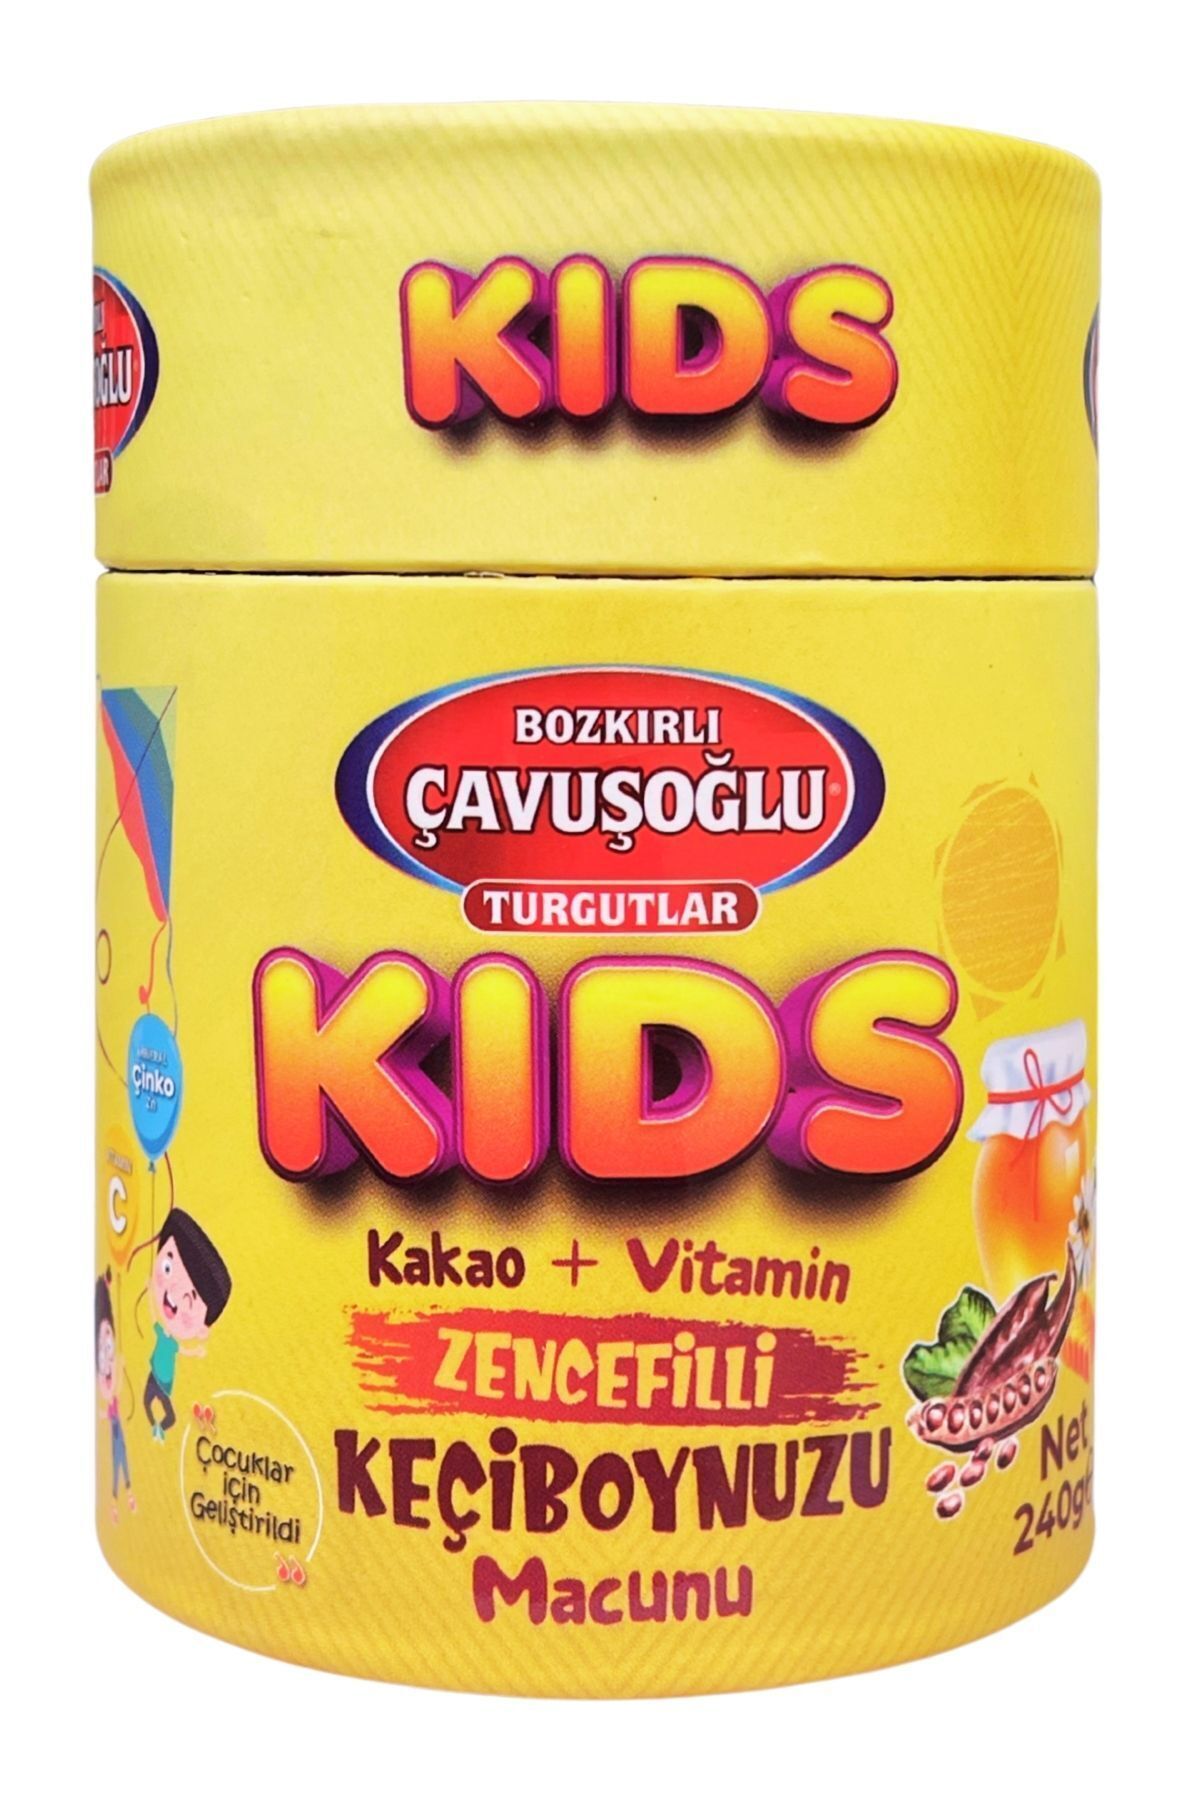 Bozkırlı Çavuşoğlu Kids Çocuklar için Özel - Zencefilli, Pekmez, Bal Ve Vitamin Katkılı Kakaolu Macun 240g